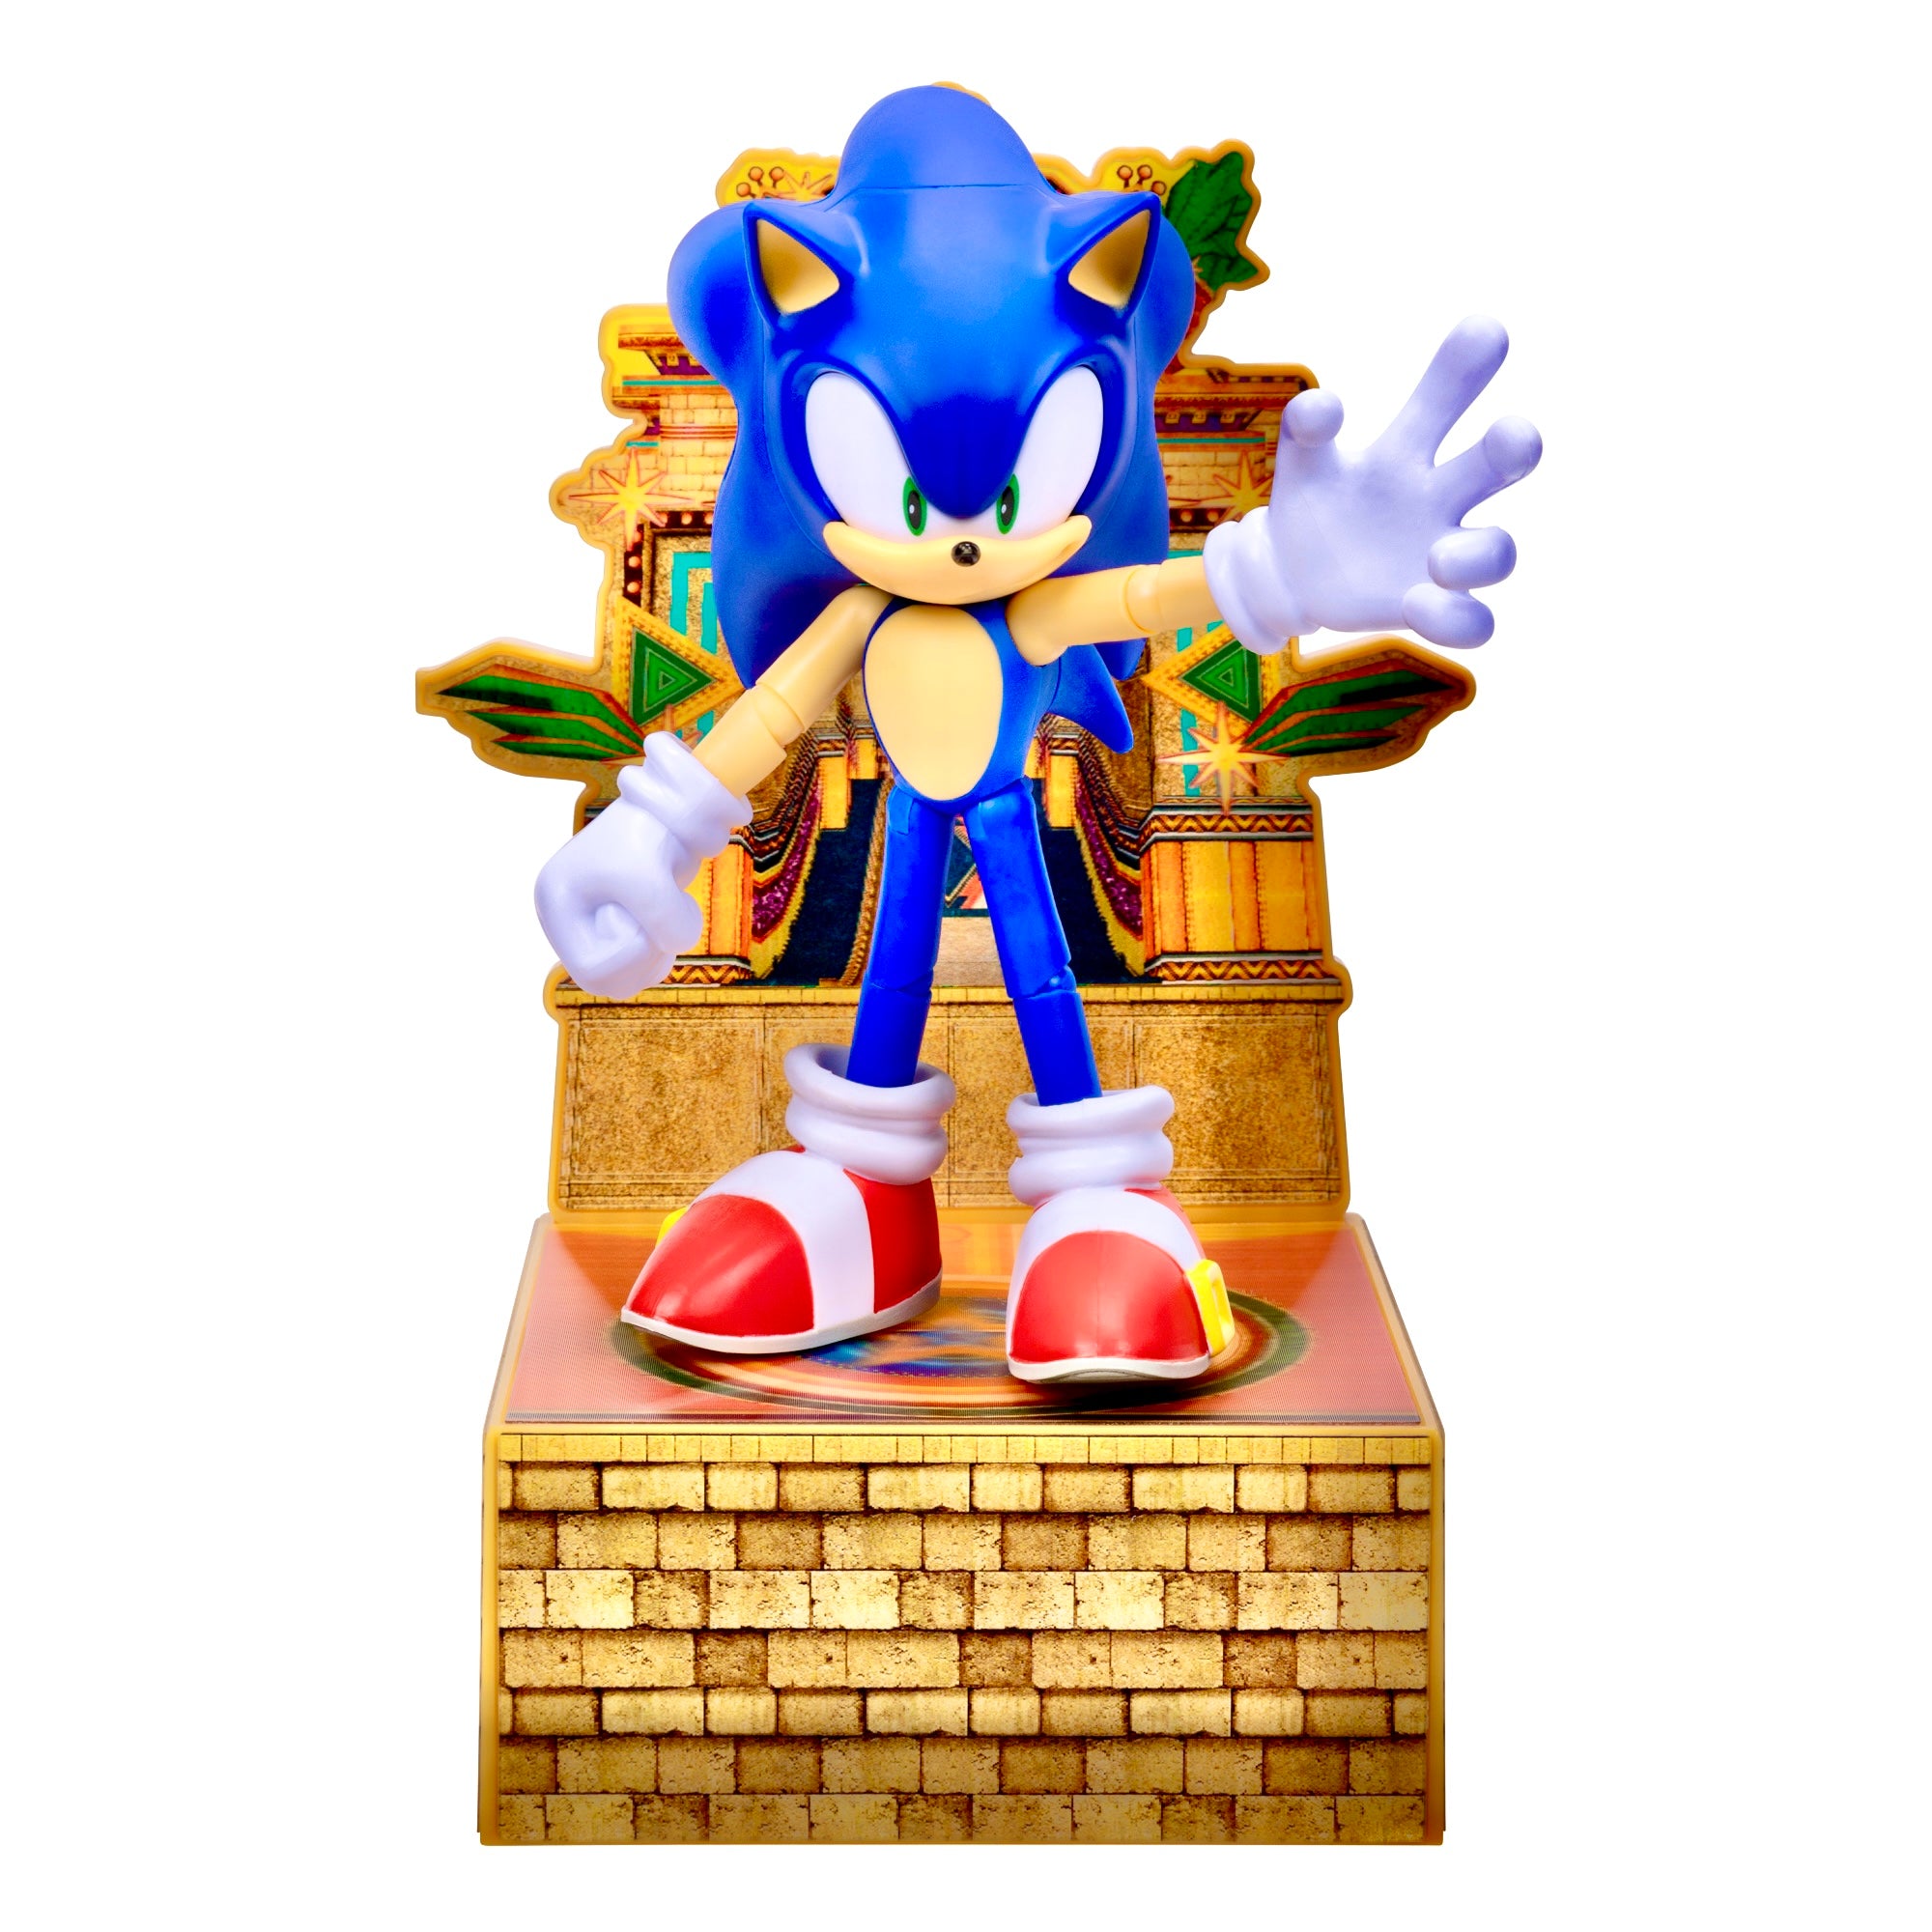 New Classic Sonic Figure Announced – SoaH City